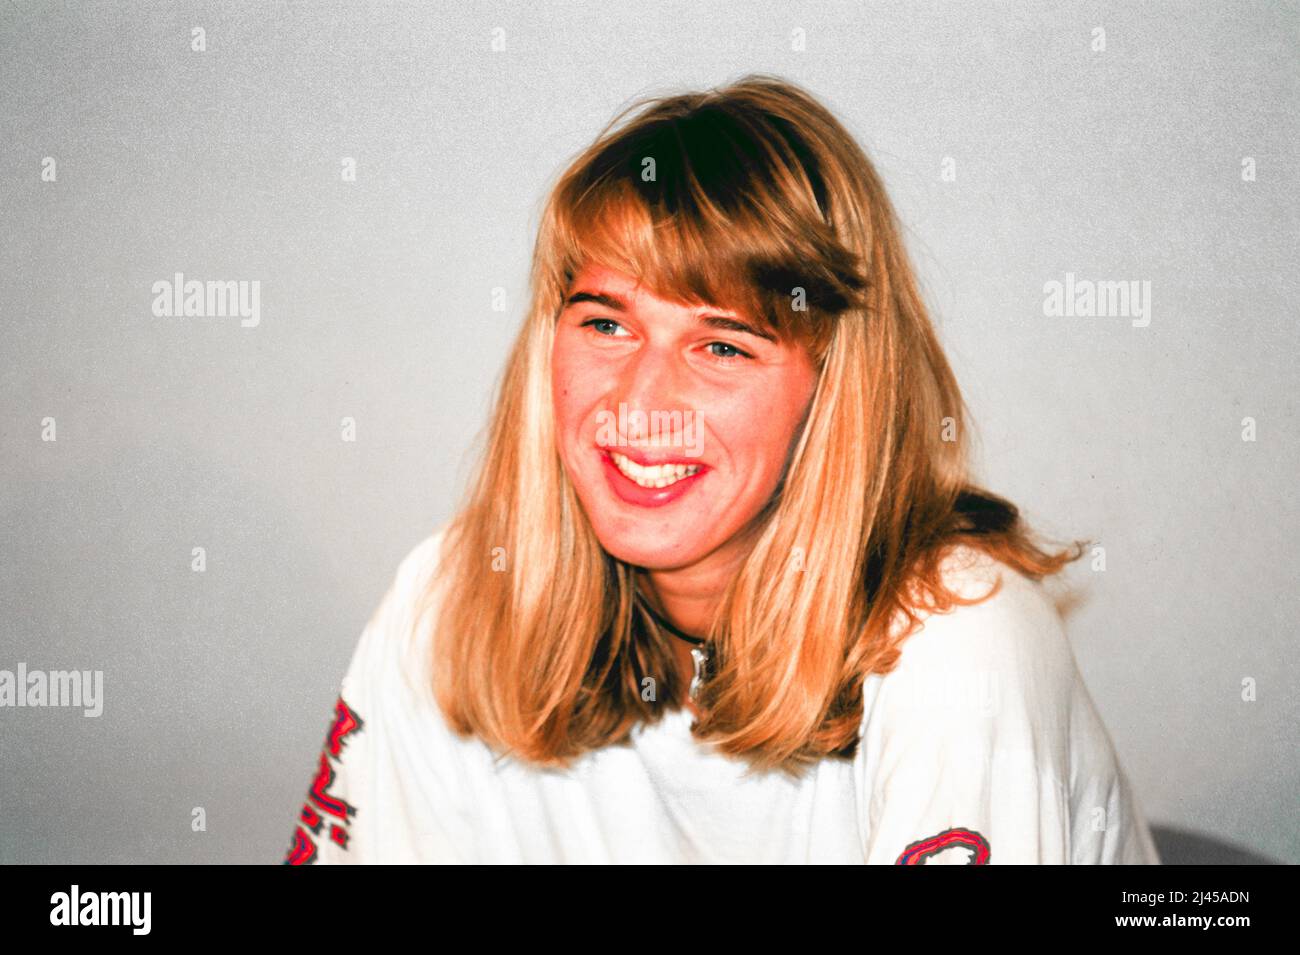 Steffi Graf, joueur de tennis professionnel allemand (1993), ici en mai 1993, lors de l'Open de France, officiellement connu sous le nom de Roland-Garros Banque D'Images